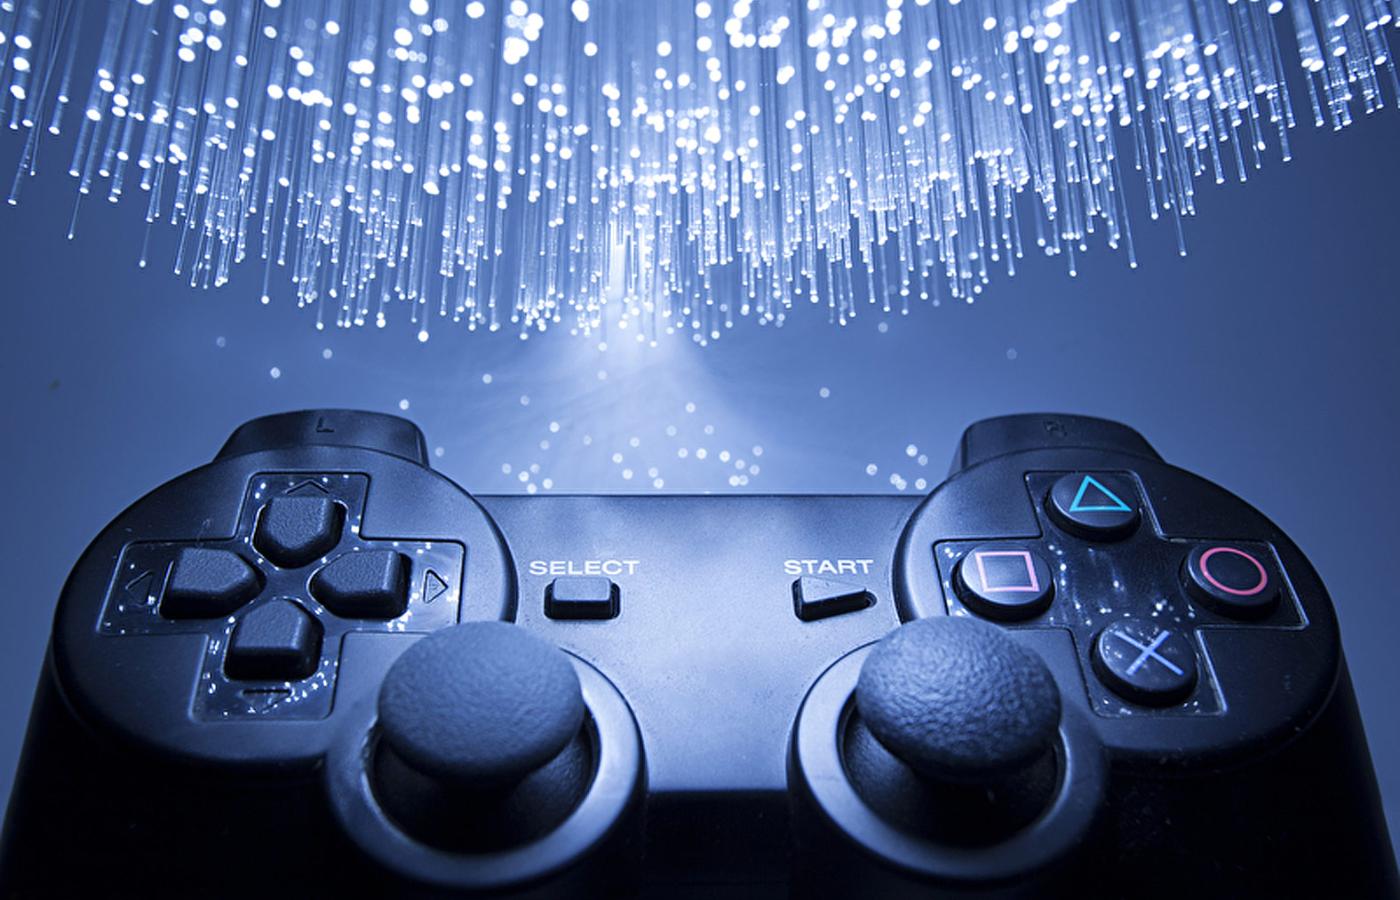 Konsole obecnej generacji, PlayStation 4 i Xbox One, pojawiły się pod koniec 2013 r. W czasie premier swoich następców będą miały siedem lat.